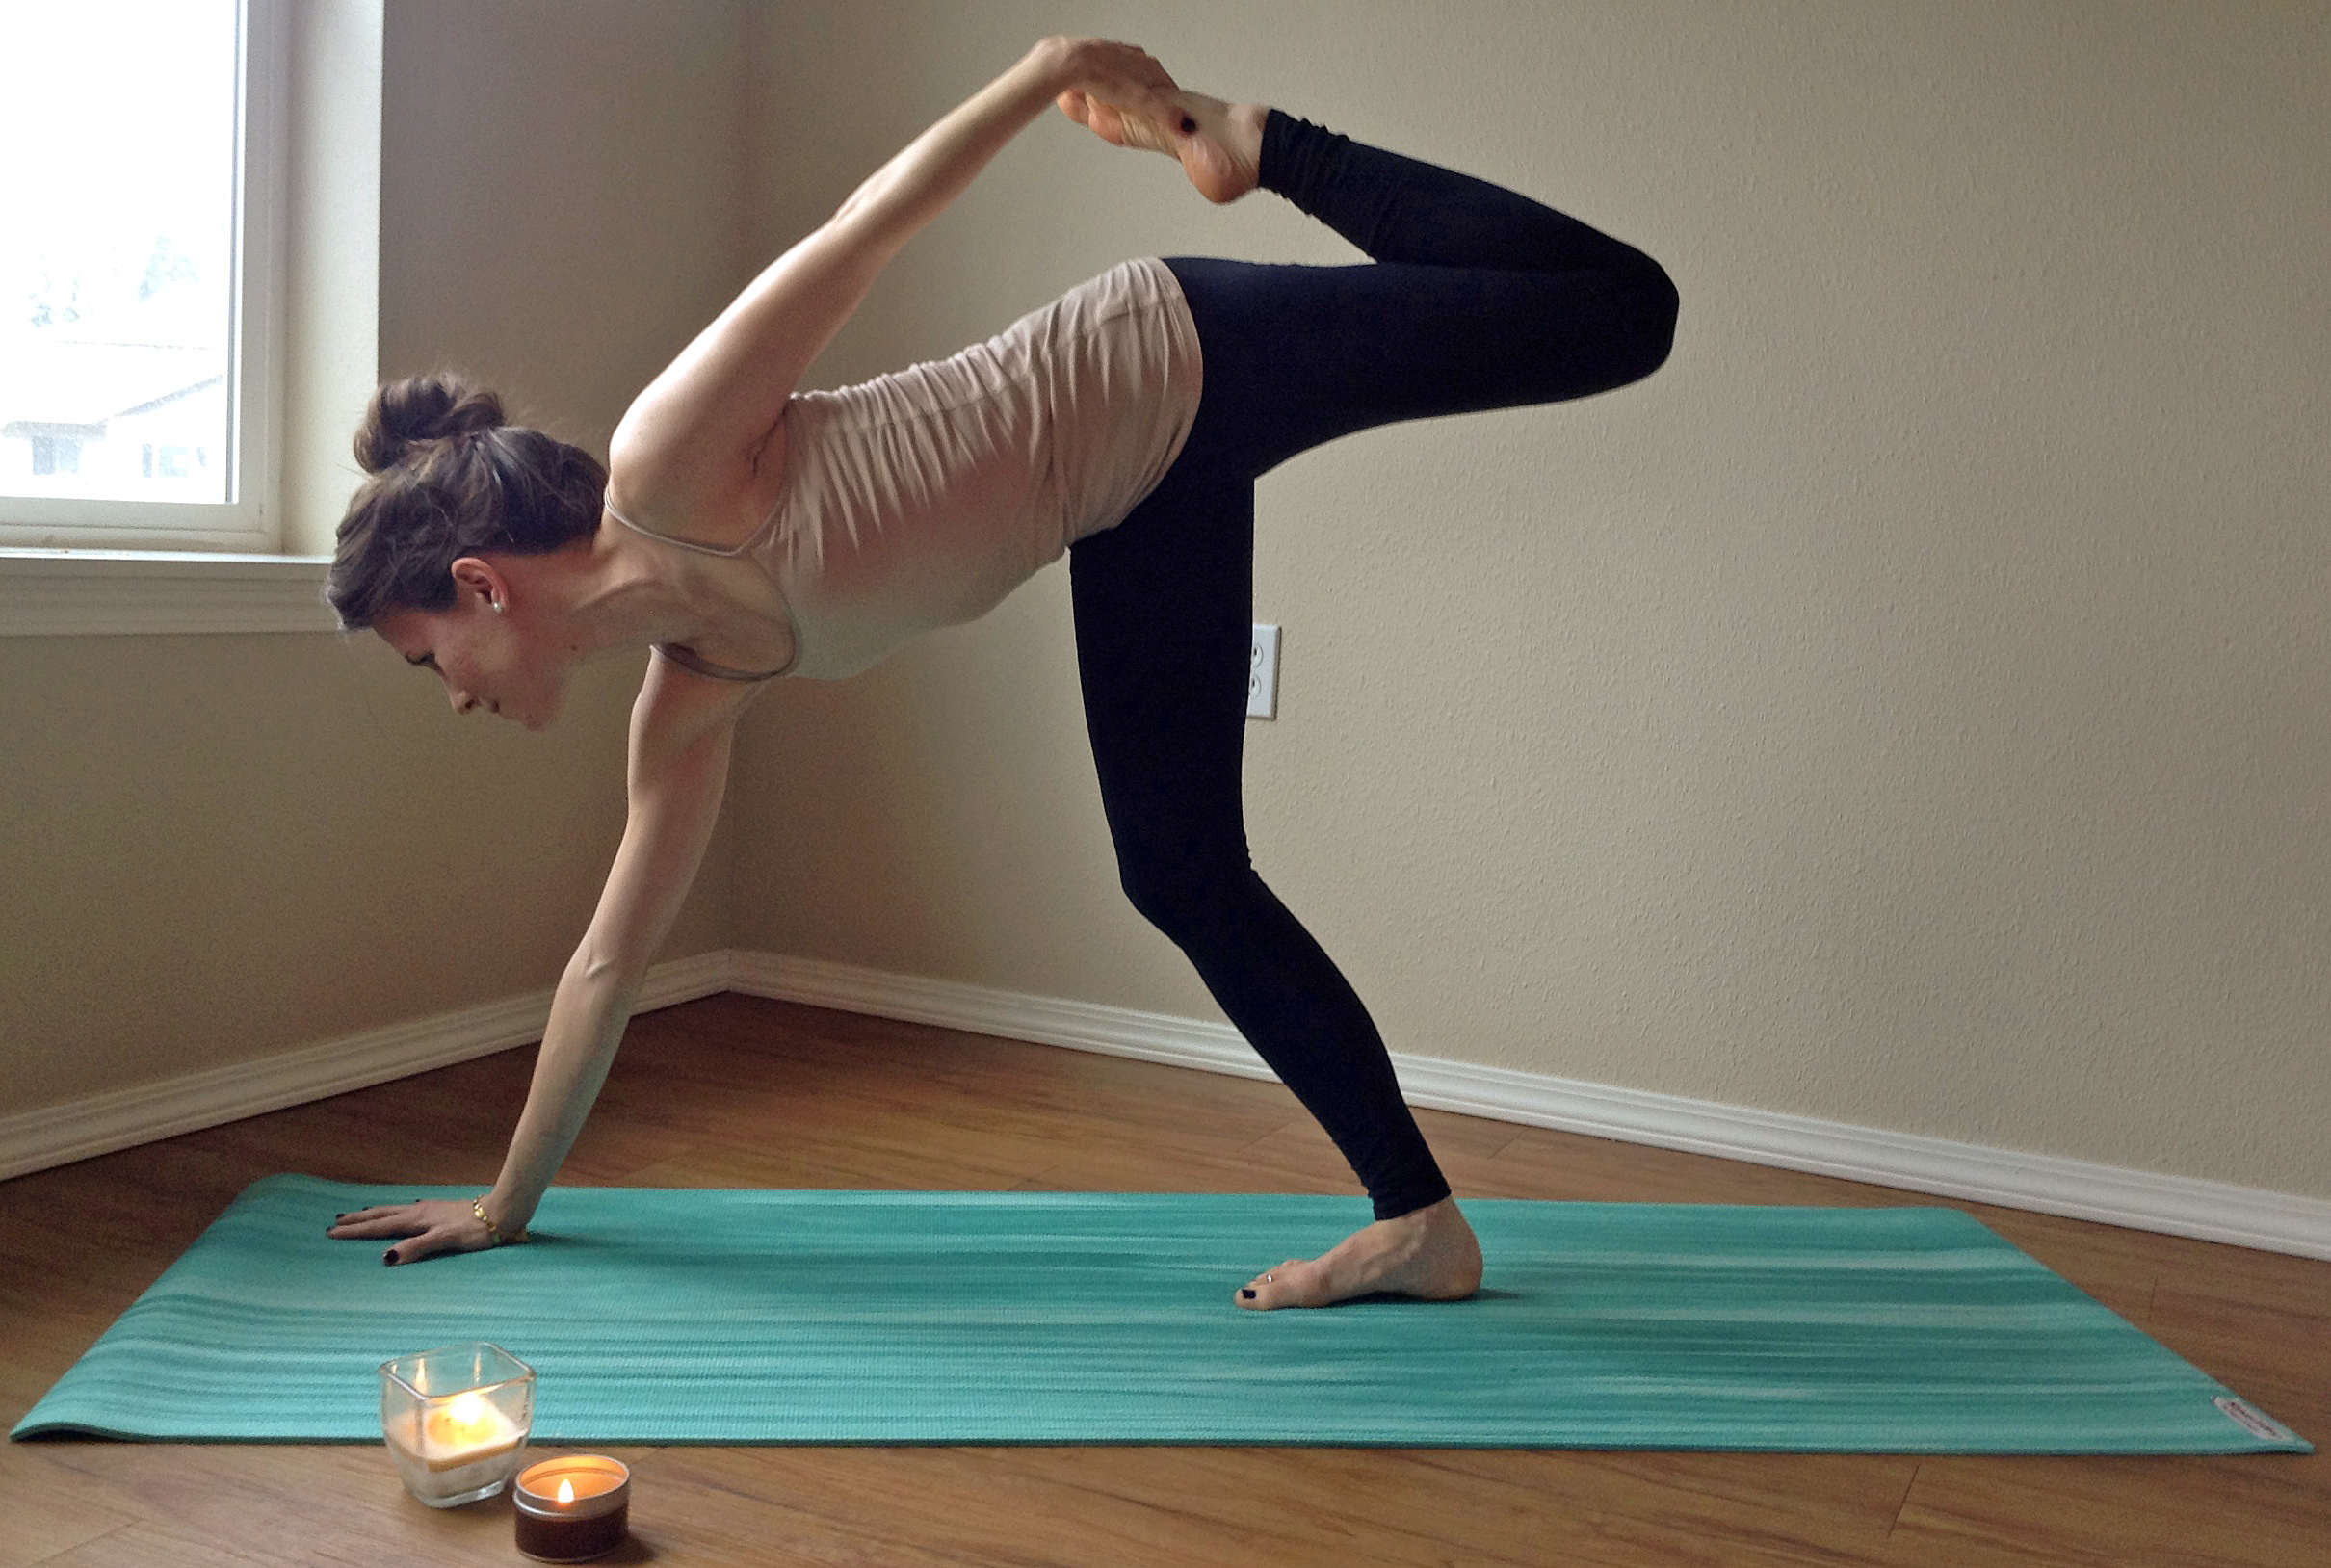 https://www.peacefuldumpling.com/wp-content/uploads/2014/03/11-Yoga-Quad_Stretch-Balance-Flexibility.jpg